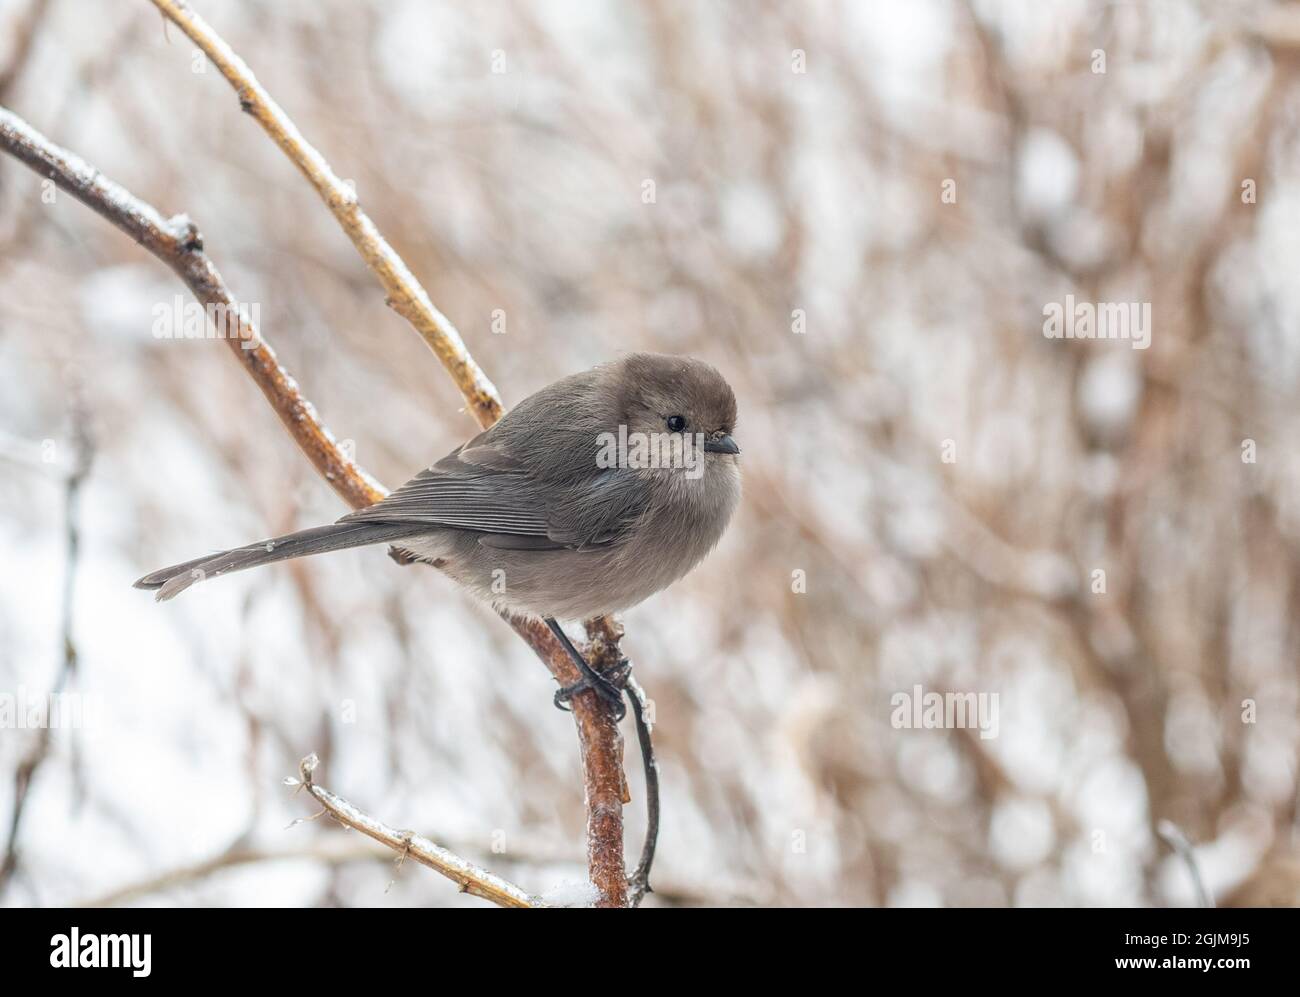 Bushtit macho encaramado en una rama helada en invierno nieve. (Saltriparus minimus) Foto de stock